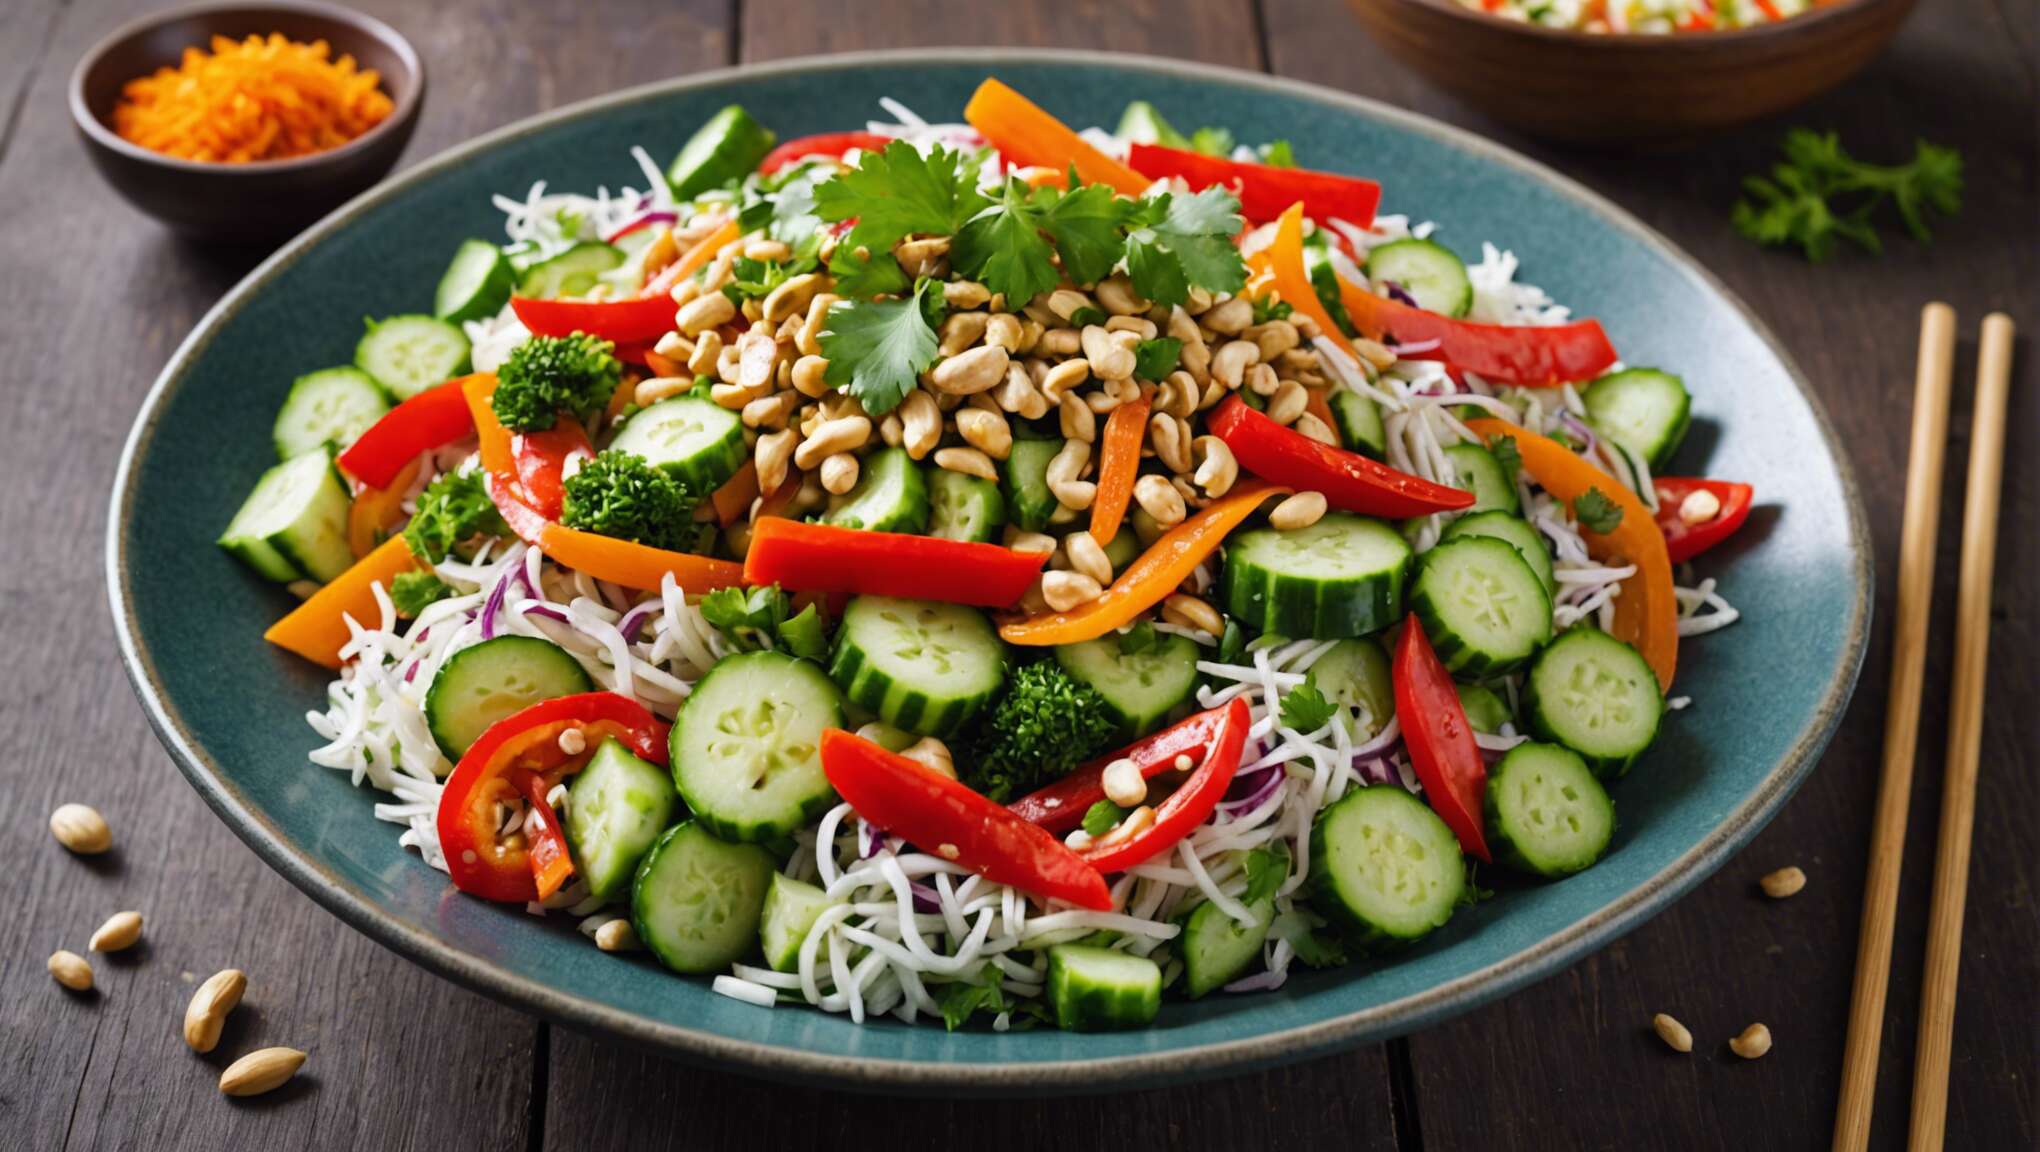 Salade de crudités aux saveurs asiatiques : recette fraîche et savoureuse